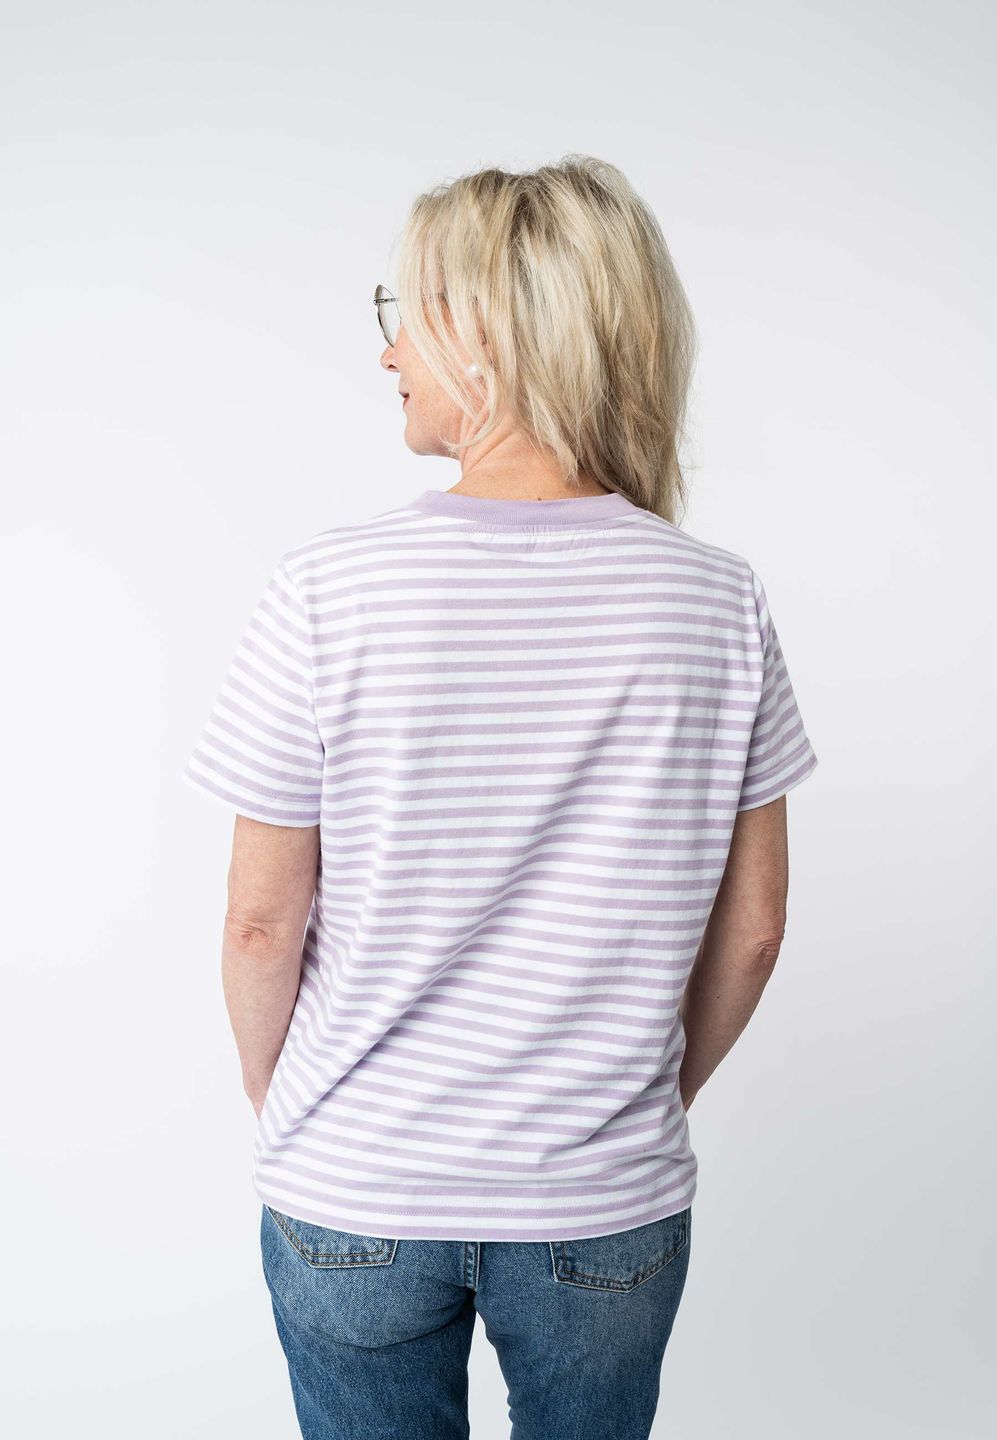 T-Shirt Khira Stripes lilac / weiß gestreift von Melawear